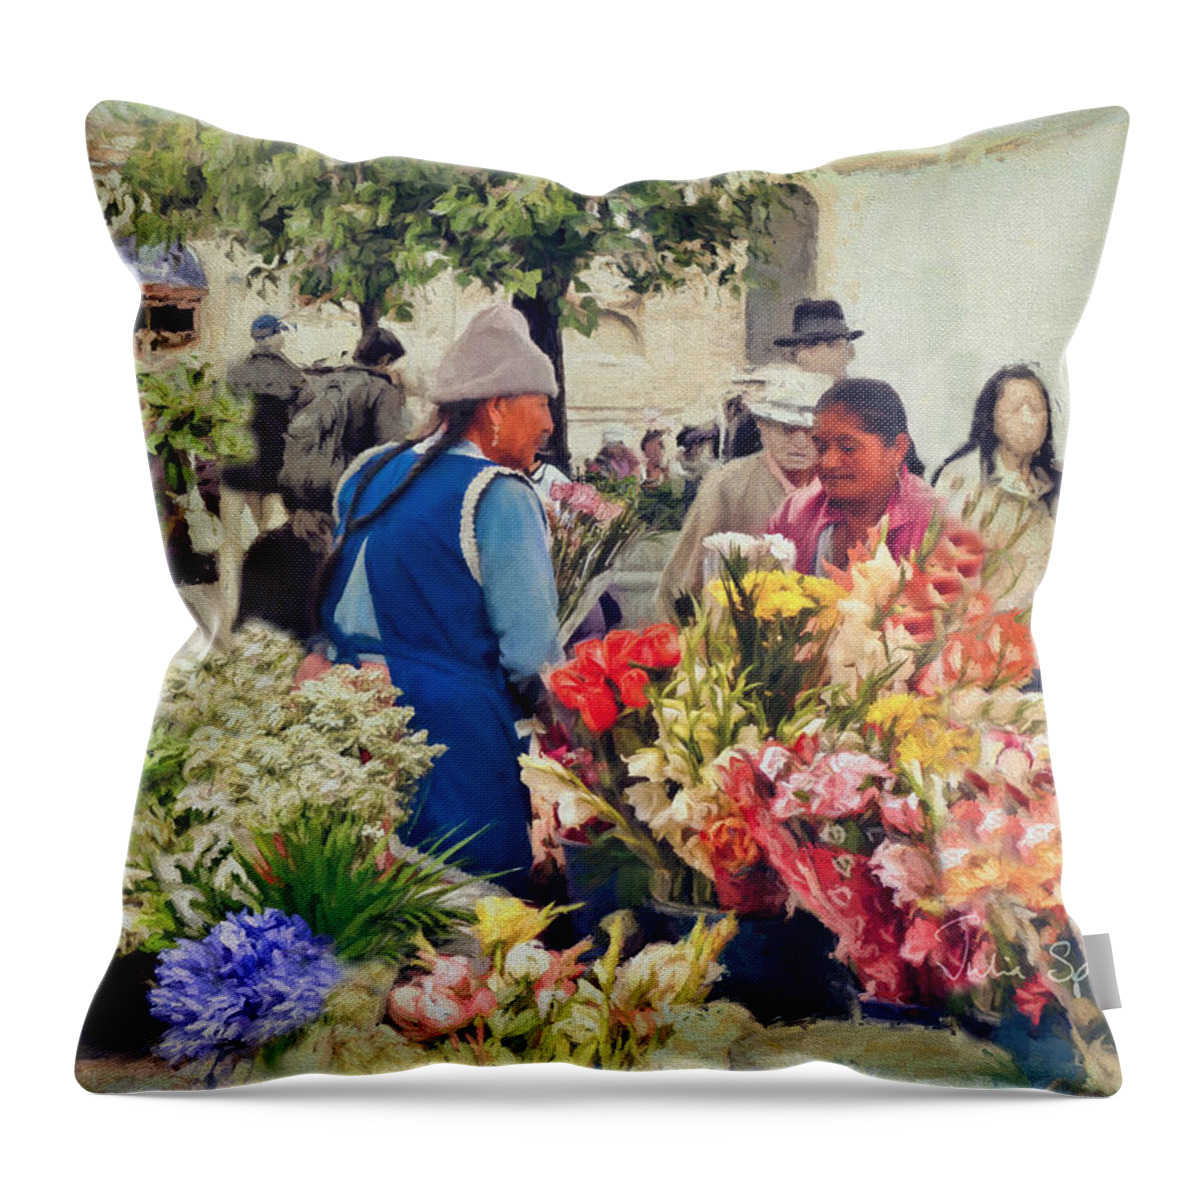 Julia Springer Throw Pillow featuring the photograph Flower Market - Cuenca - Ecuador by Julia Springer